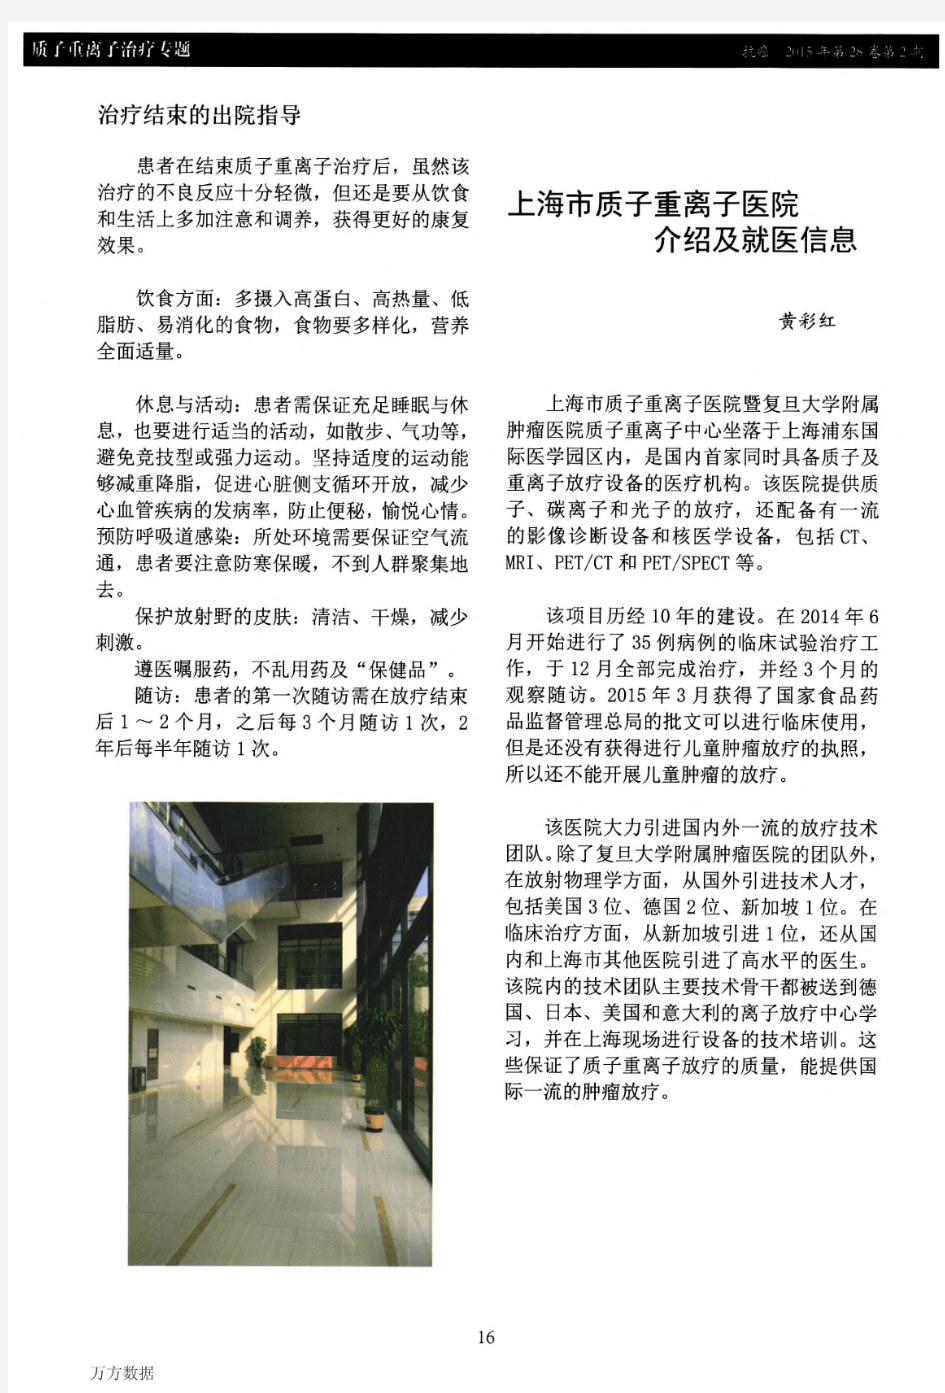 上海市质子重离子医院介绍及就医信息